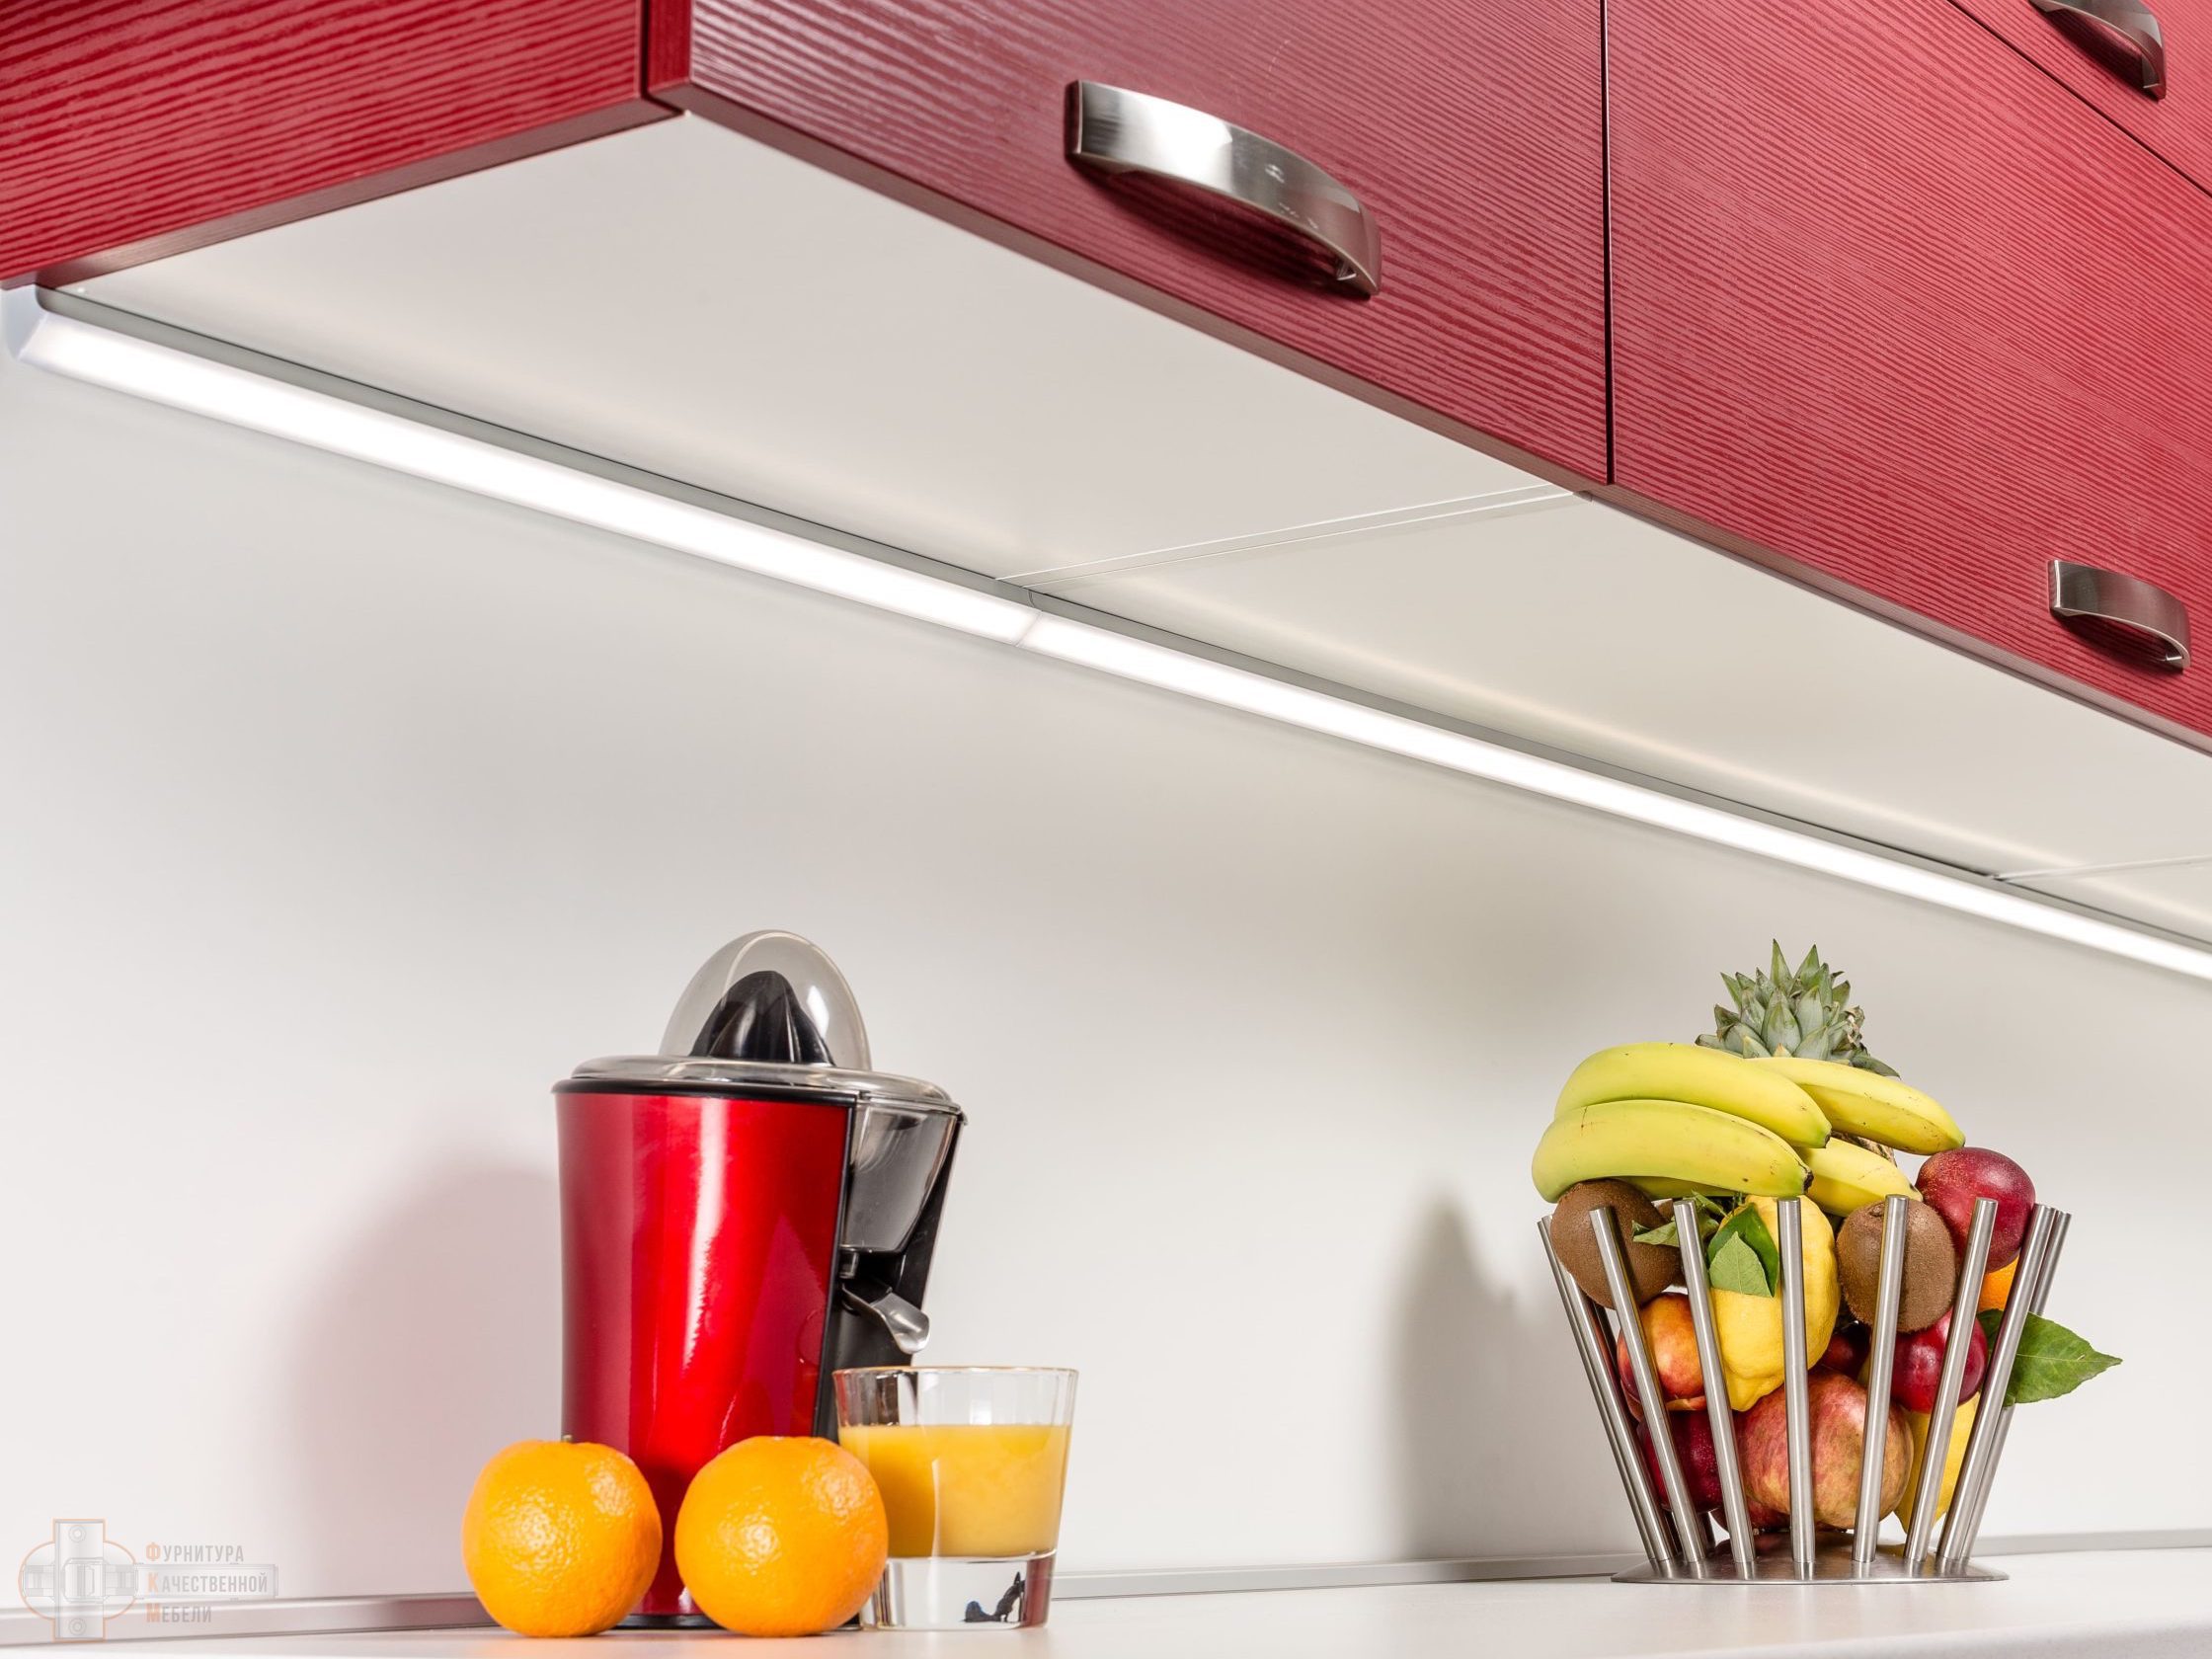 Подсветка кухни какая лучше. Evoline светодиодный светильник 560 мм. Мебельный светильник Elettroimpianti светодиодный. Светильник для подсветки кухни под шкафом поворотный Luka 79154/08/36.